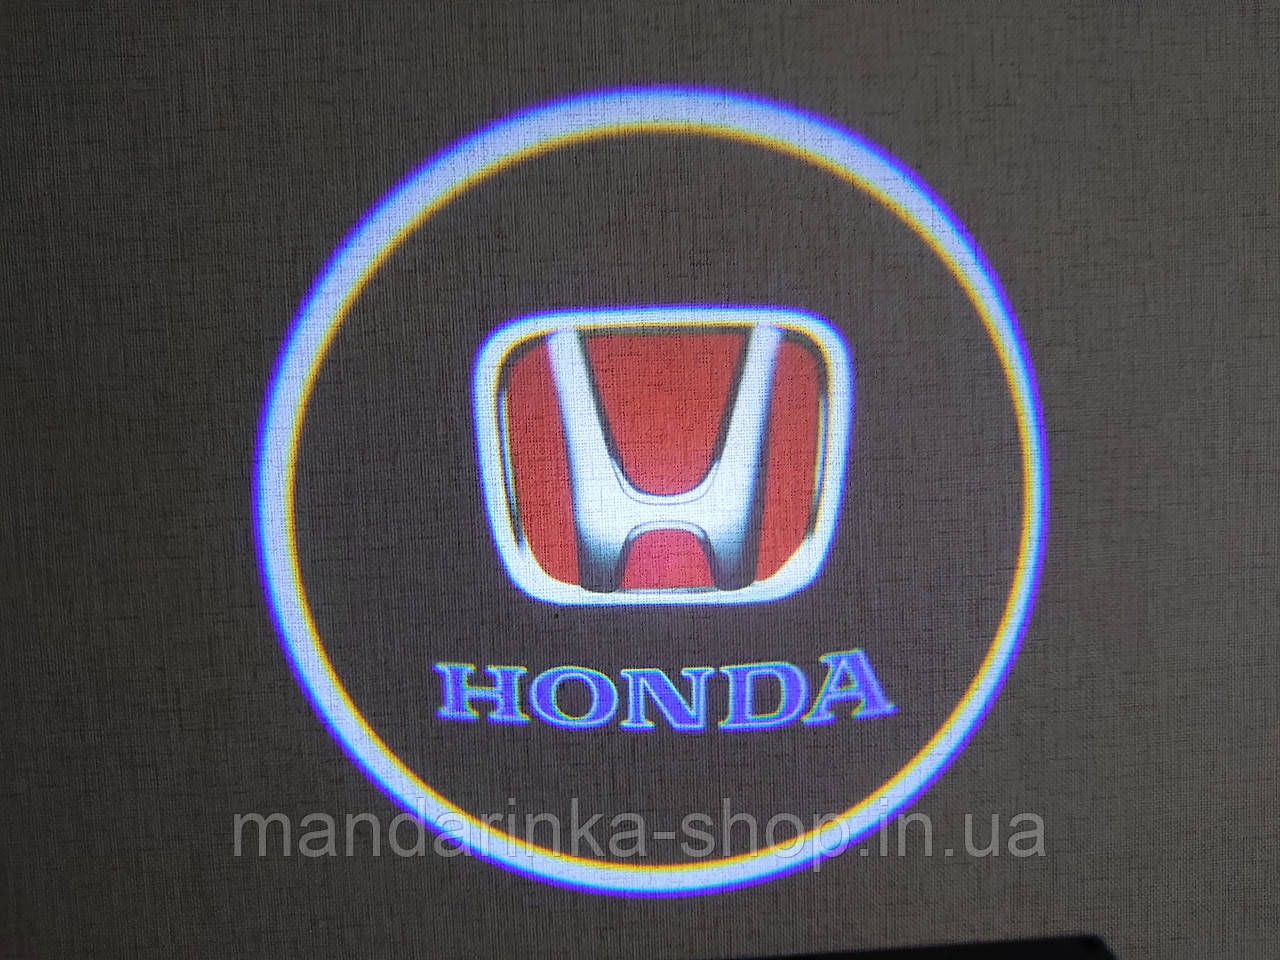 Лазерне підсвічування на дверях автомобіля з логотипом Honda